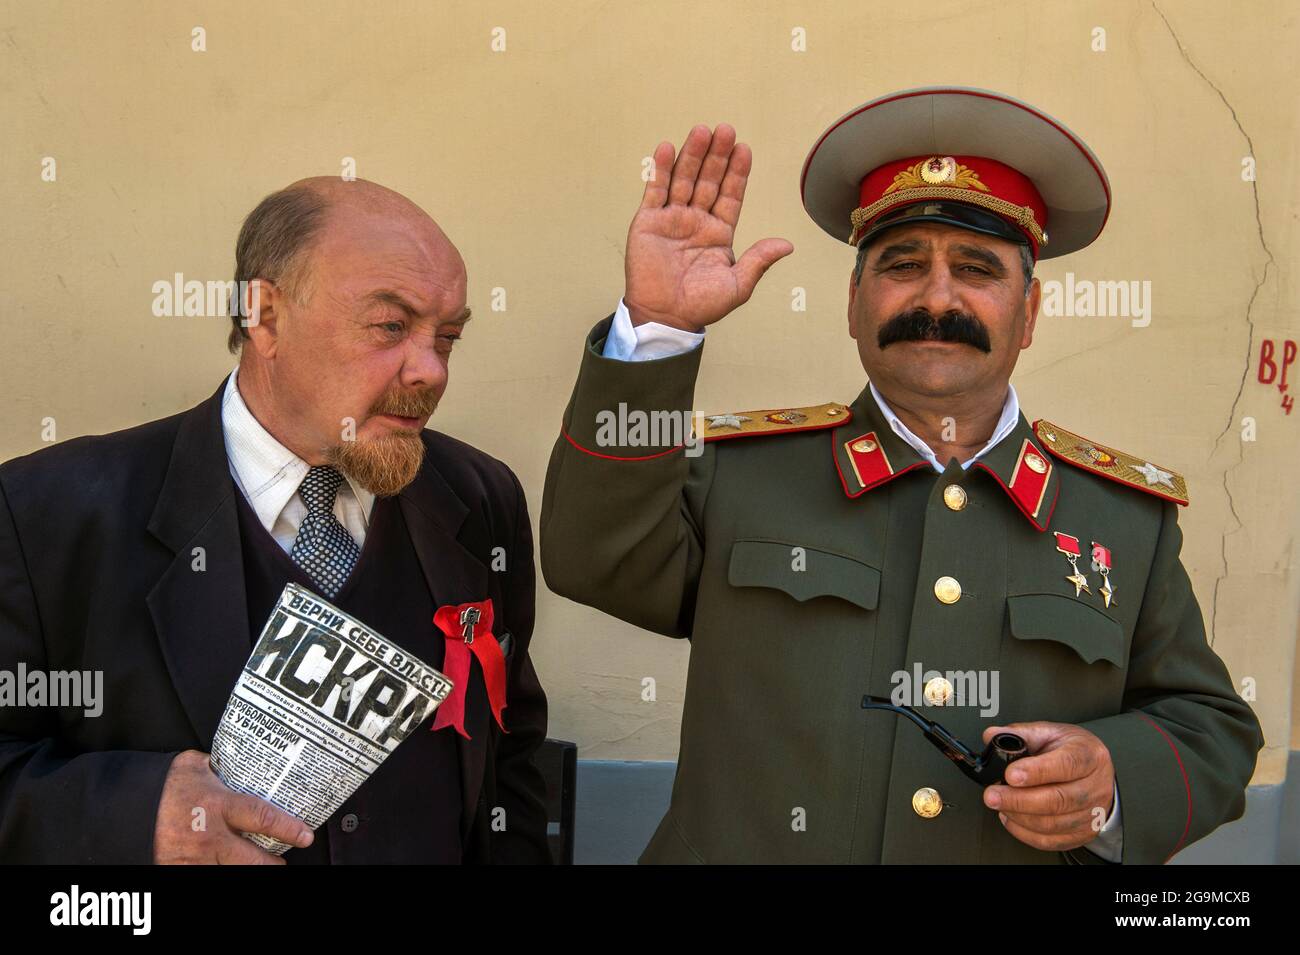 Schauspieler, die als Lenin (l) und Stalin verkleidet sind, verlassen sich auf Tipps, um ihren Lebensunterhalt im Zentrum Moskaus zu verdienen. Stockfoto